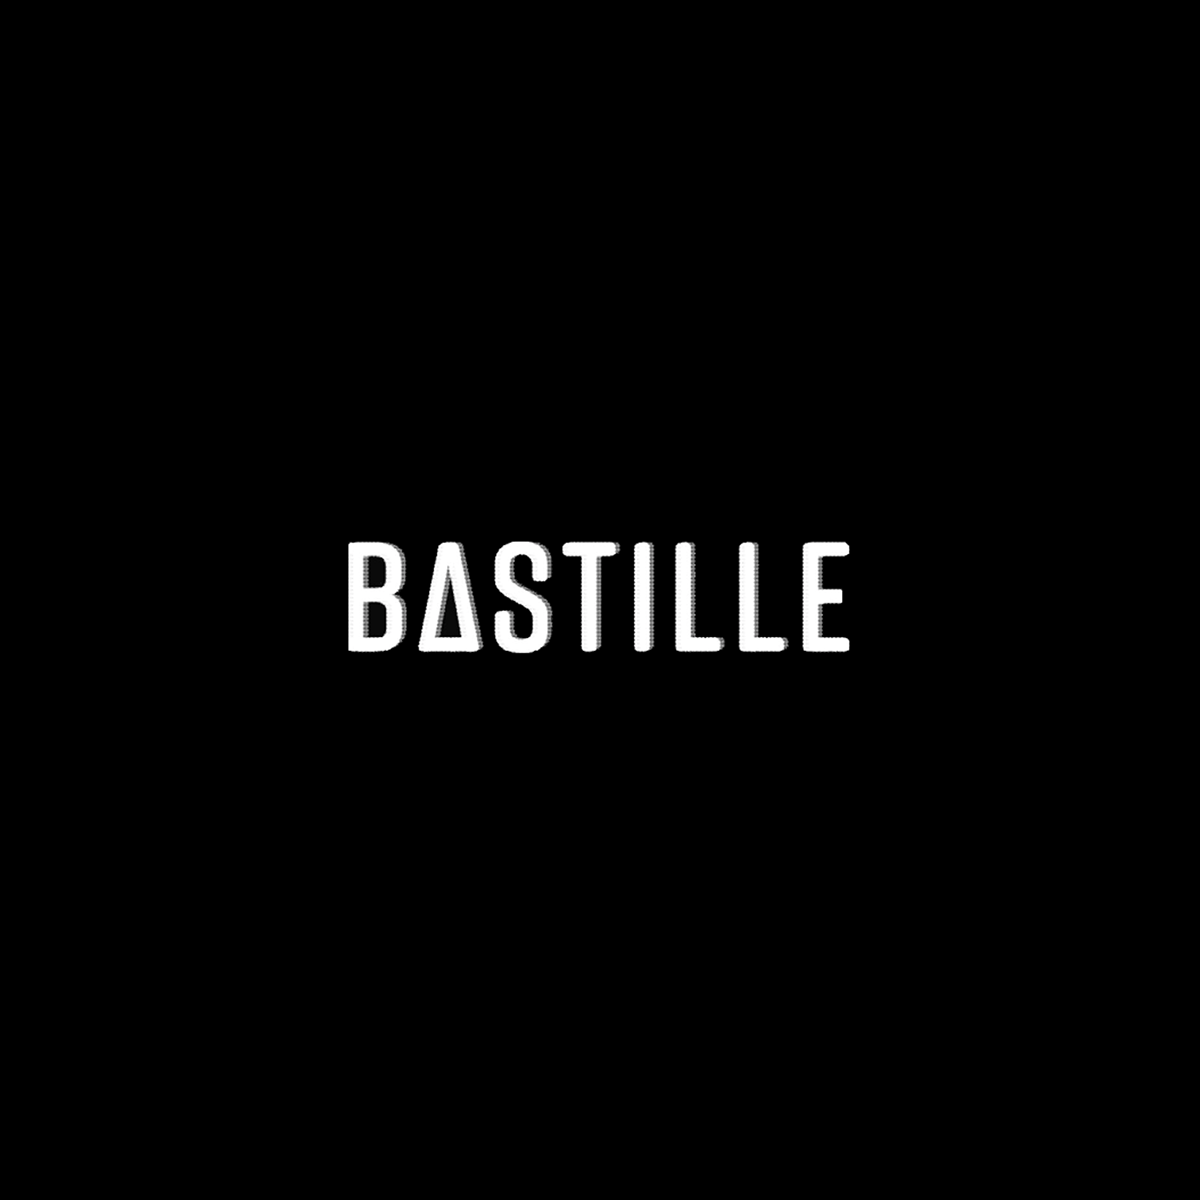 Bastille Black and White Logo